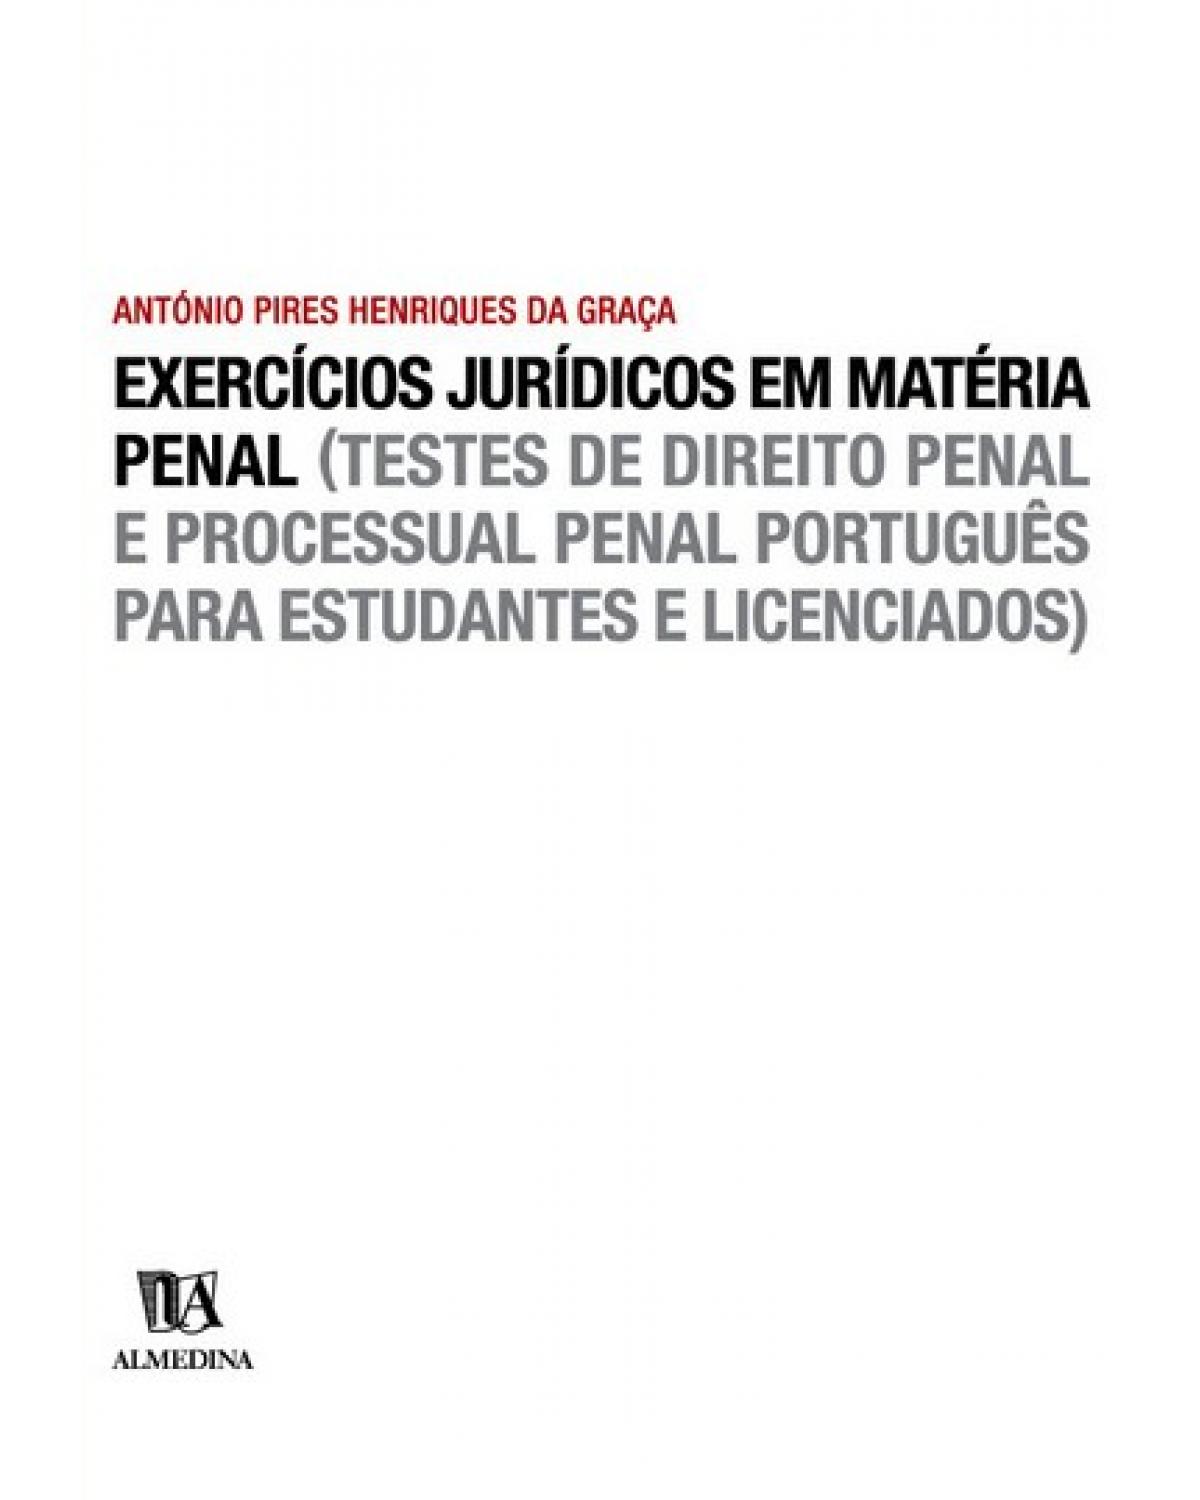 Exercícios jurídicos em matéria criminal  - (testes de direito penal e processual penal português para estudantes e licenciados) - 1ª Edição | 2003